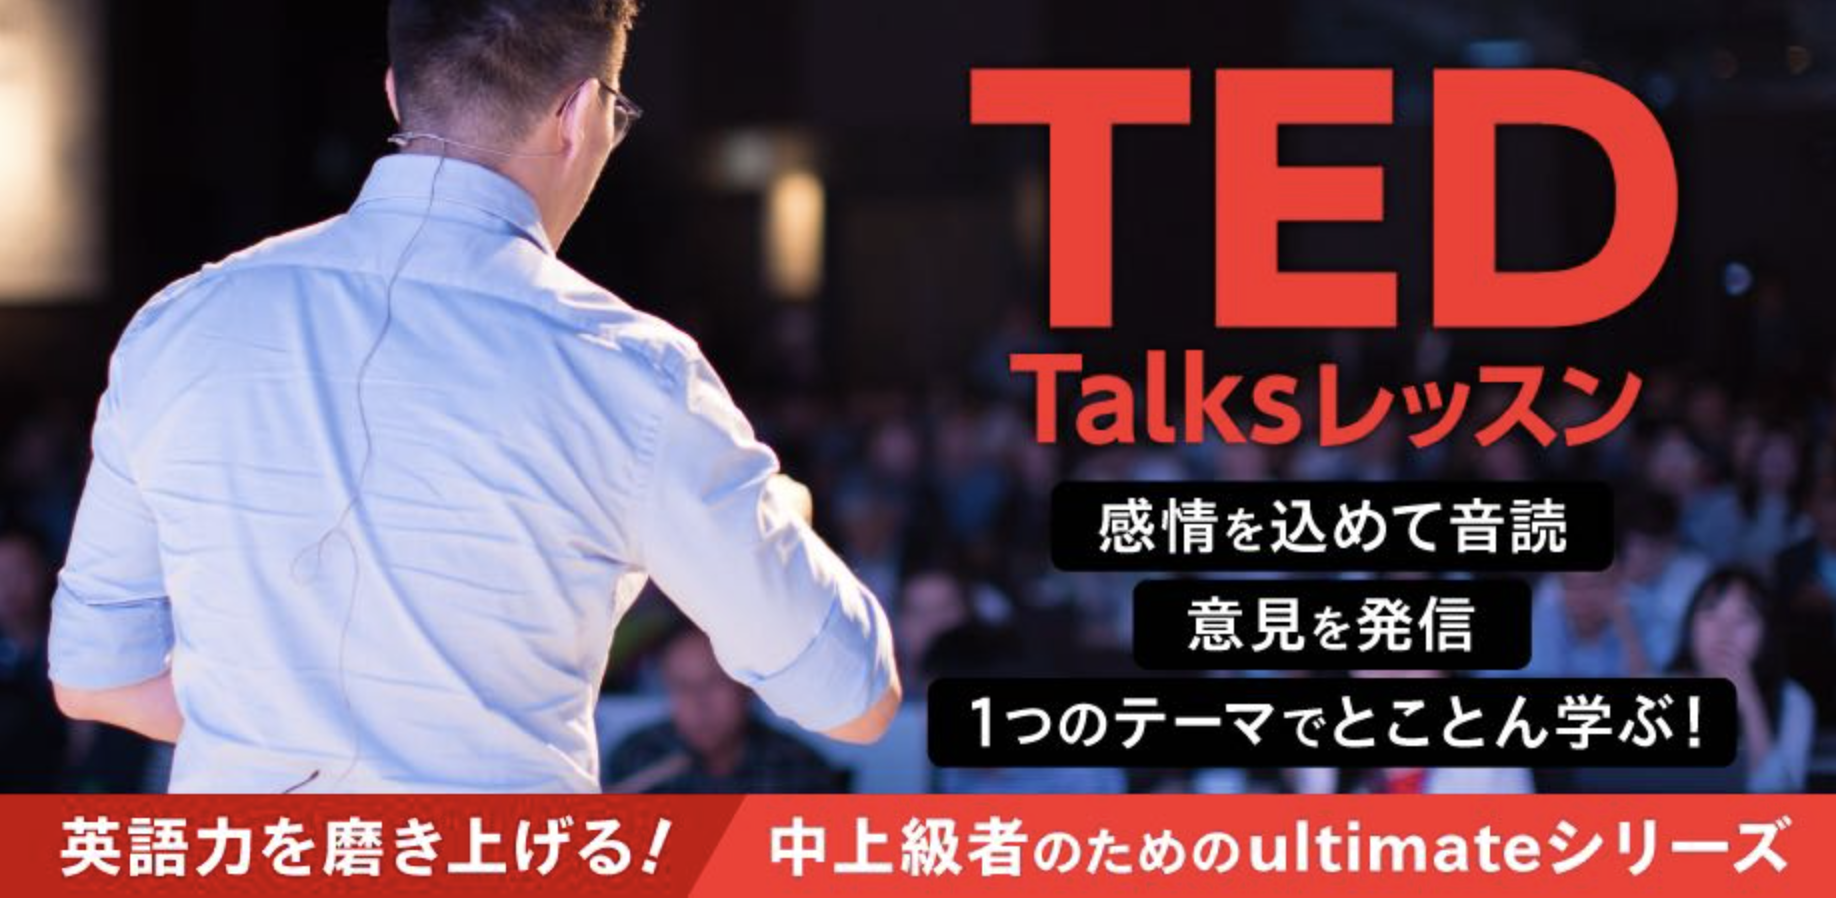 英語学習者に大人気のTED Talksを題材にしたオンラインレッスンを新規